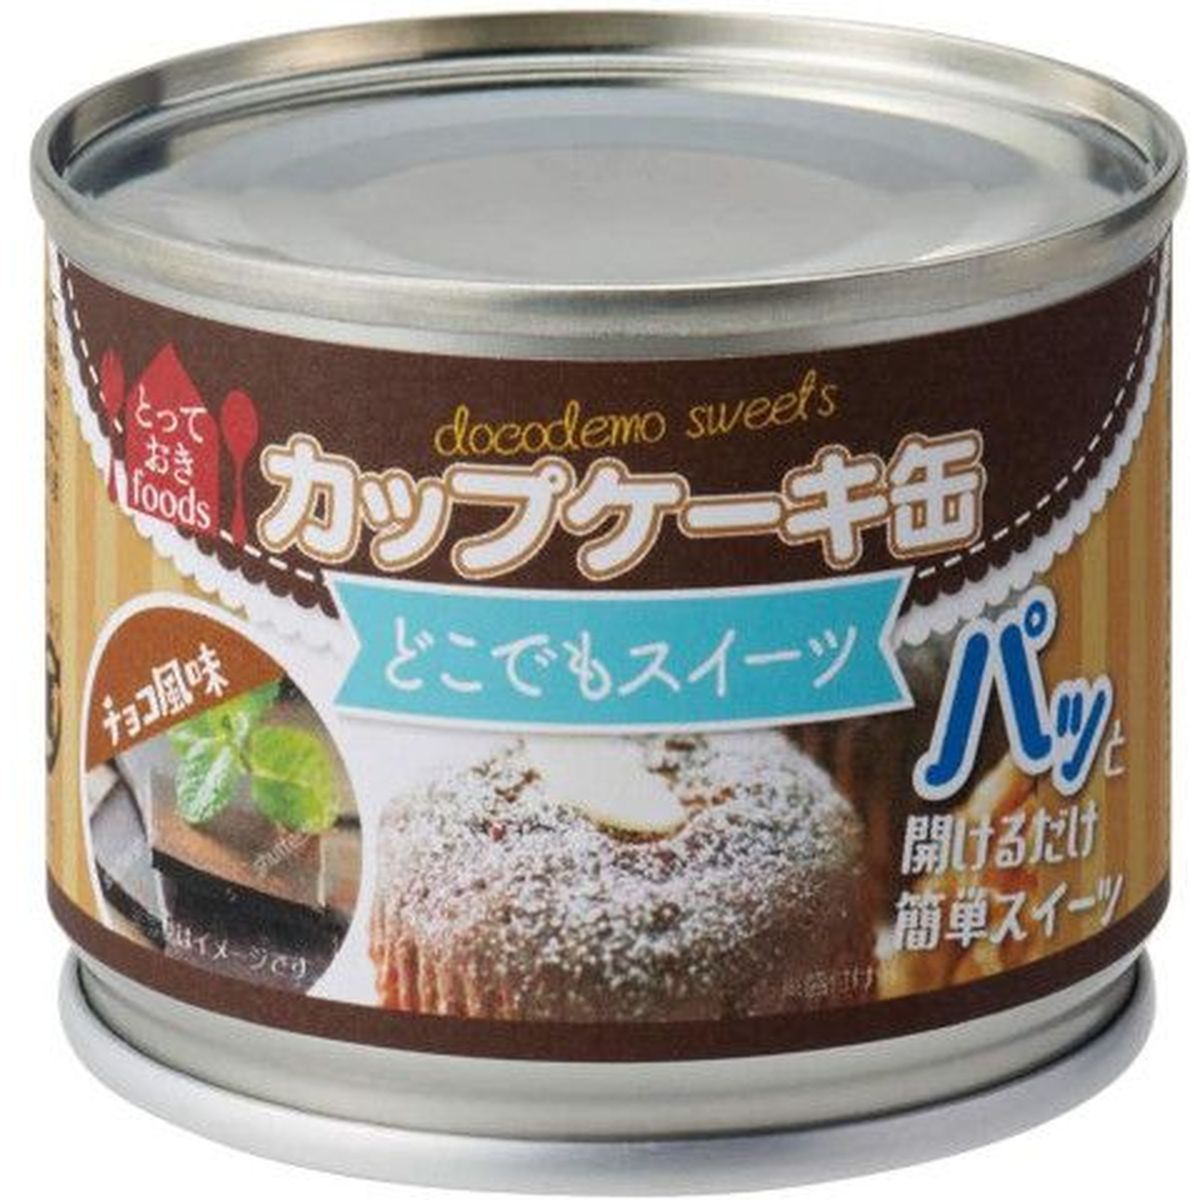 【24個入リ】トーヨーフーズ ドコデモスイーツ缶 カップケーキ チョコ 50g